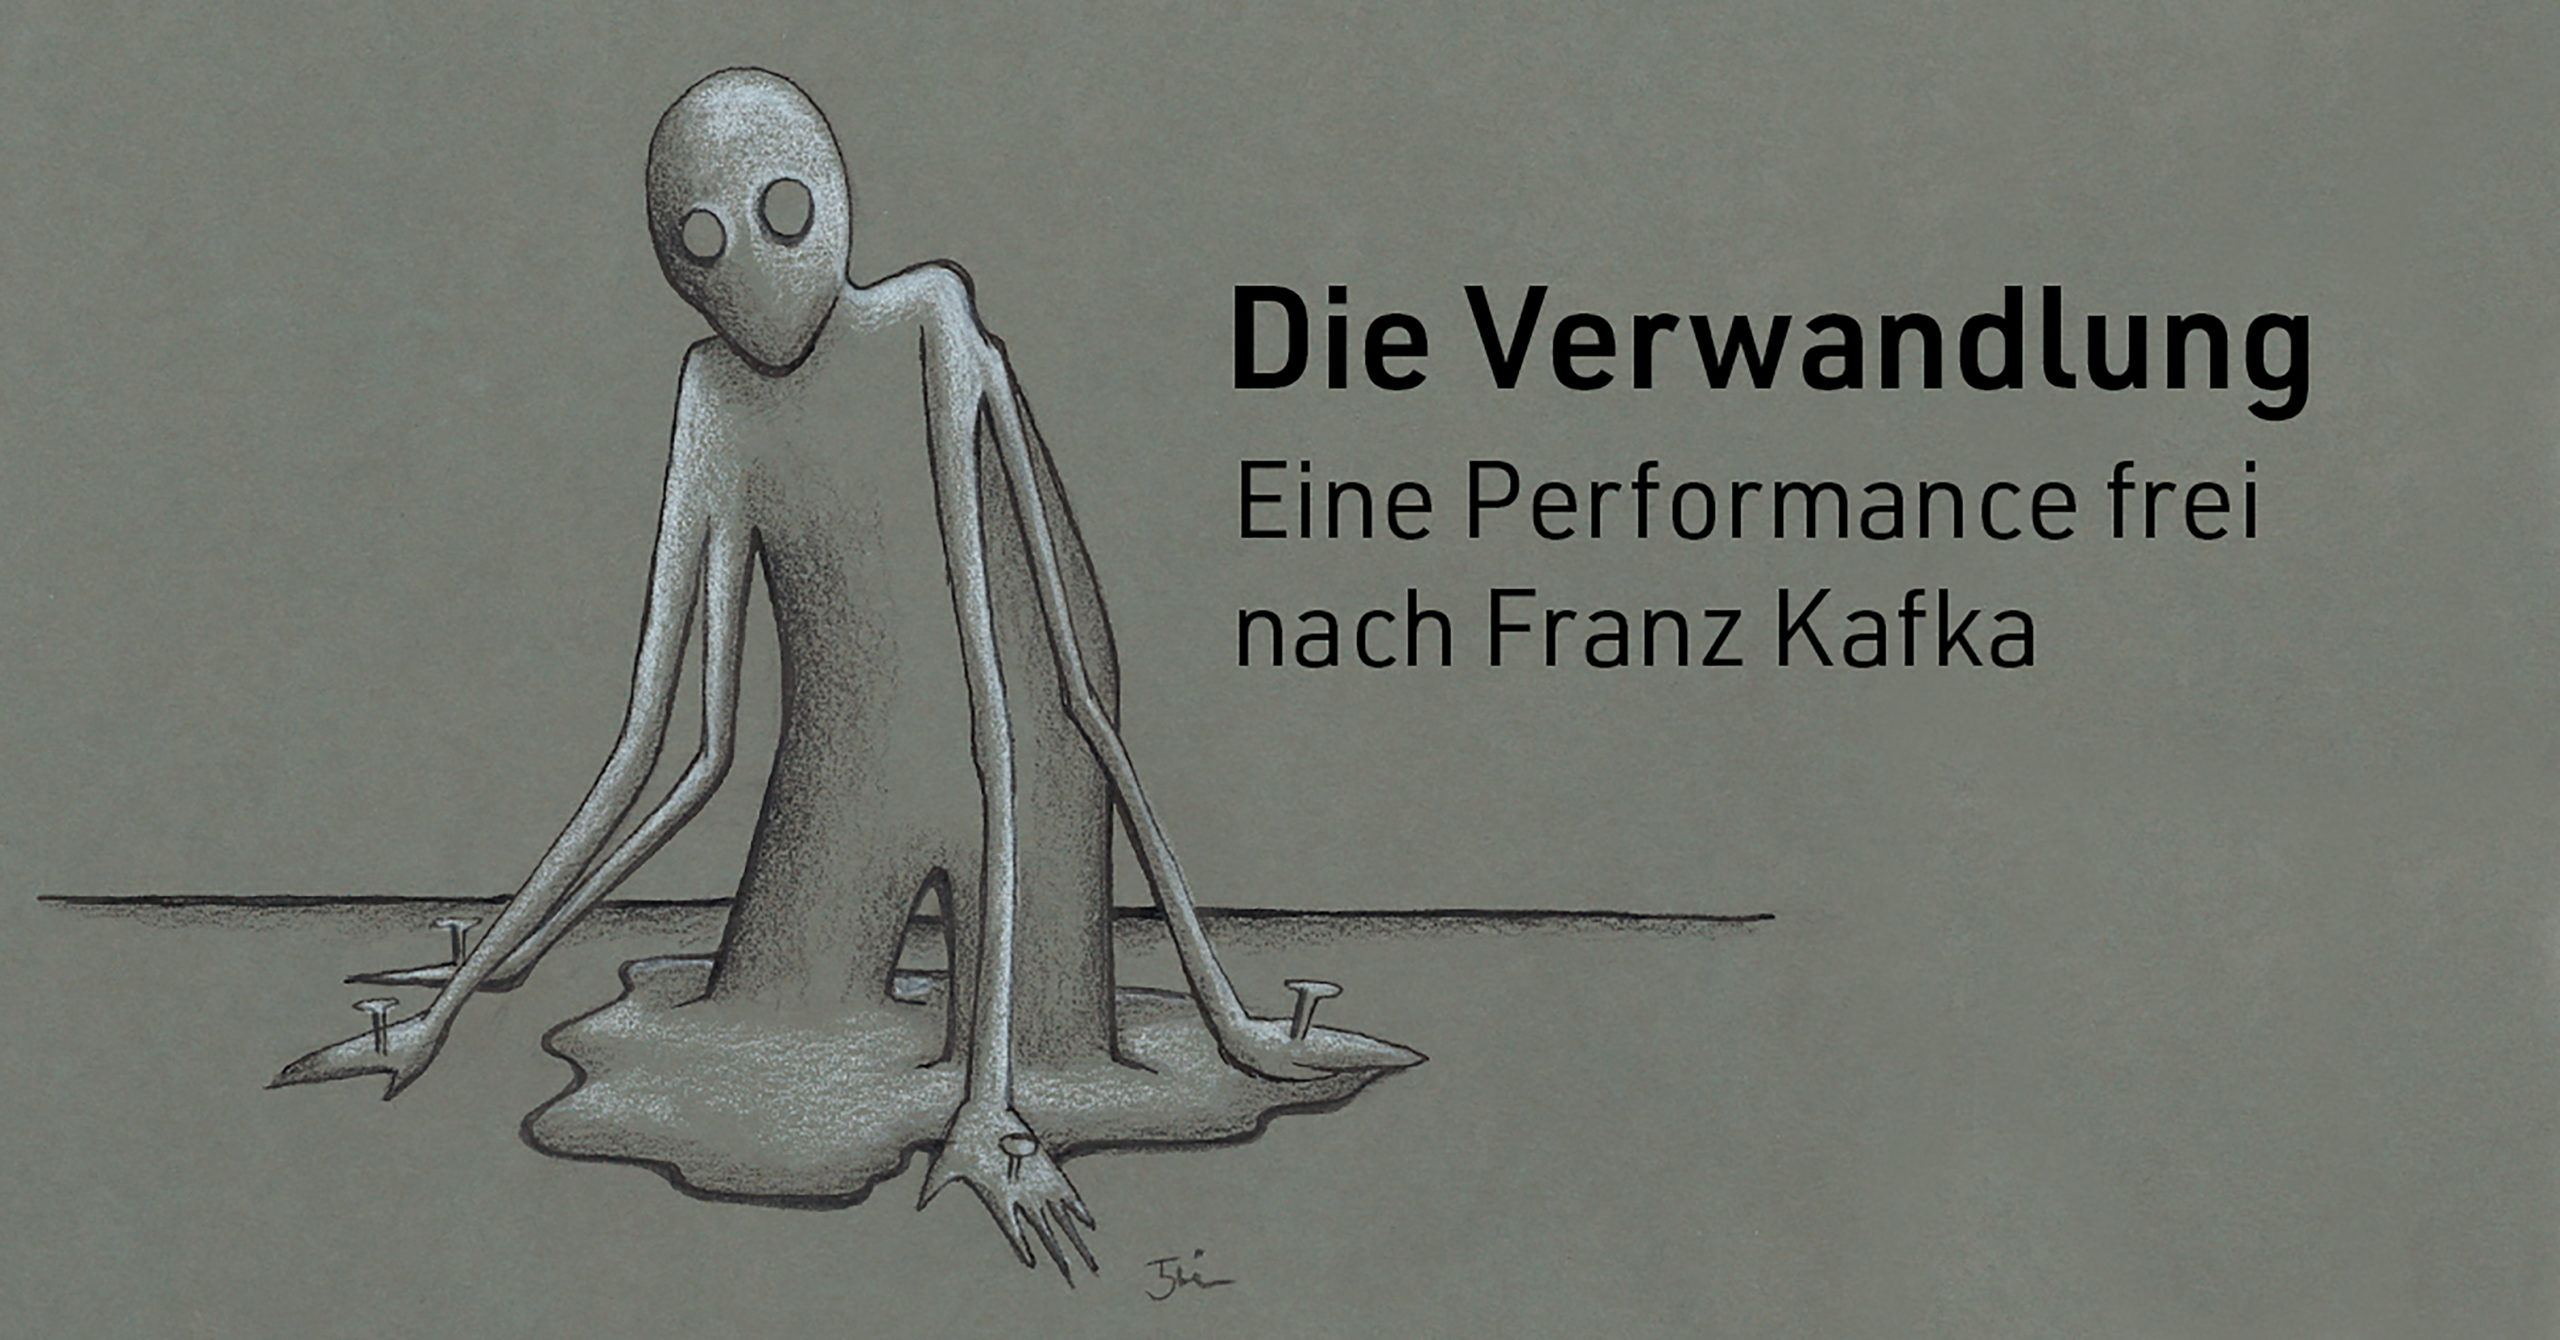 ABGESAGT Die Verwandlung - Eine Performance frei nach Franz Kafka